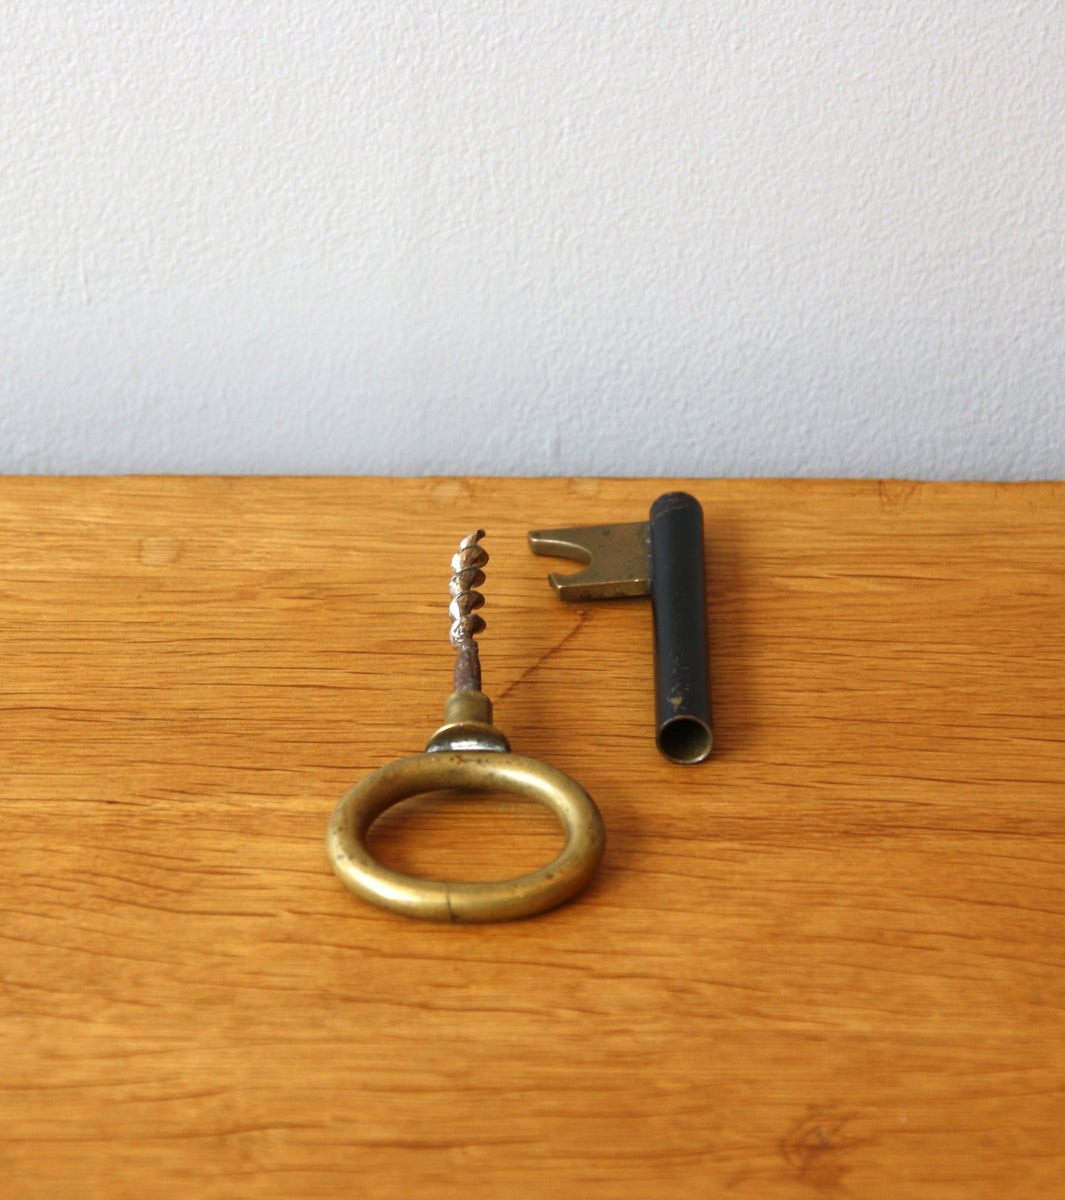 Black and Brass Key Corkscrew by Carl Auböck - Image 1